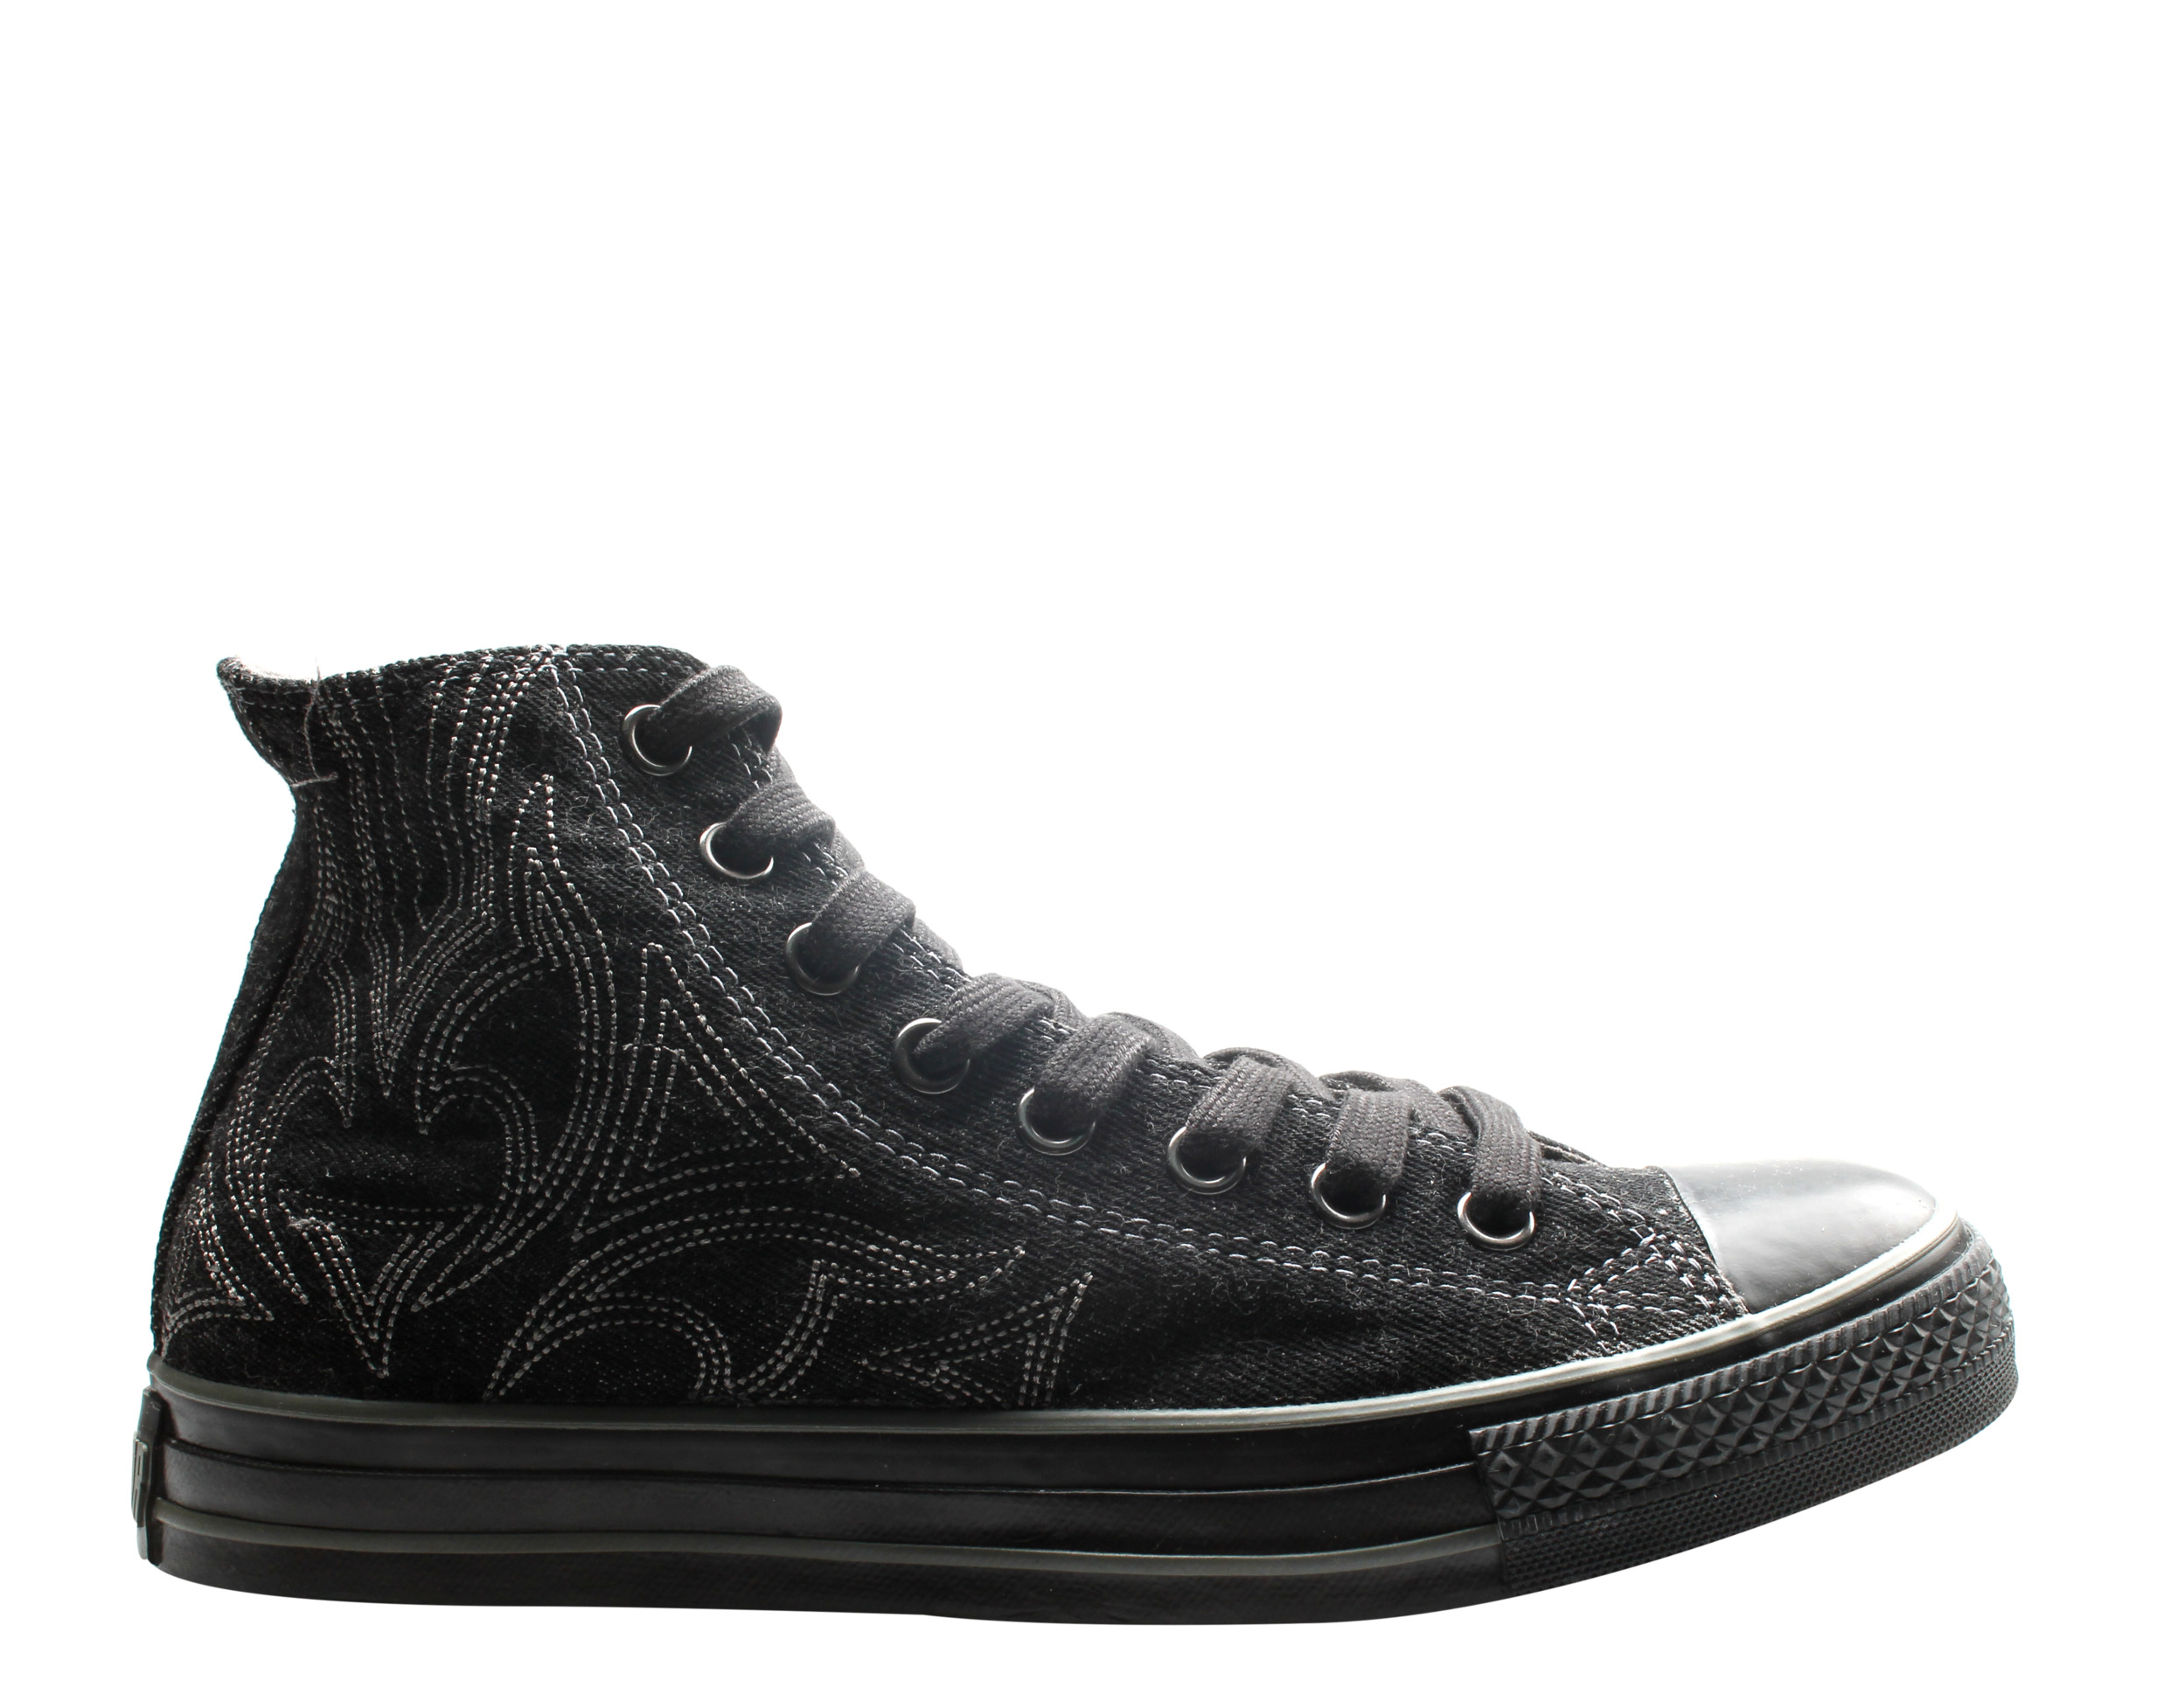 Converse Chuck Taylor All Star Denim Black/Charcoal Hi Sneakers 1V230